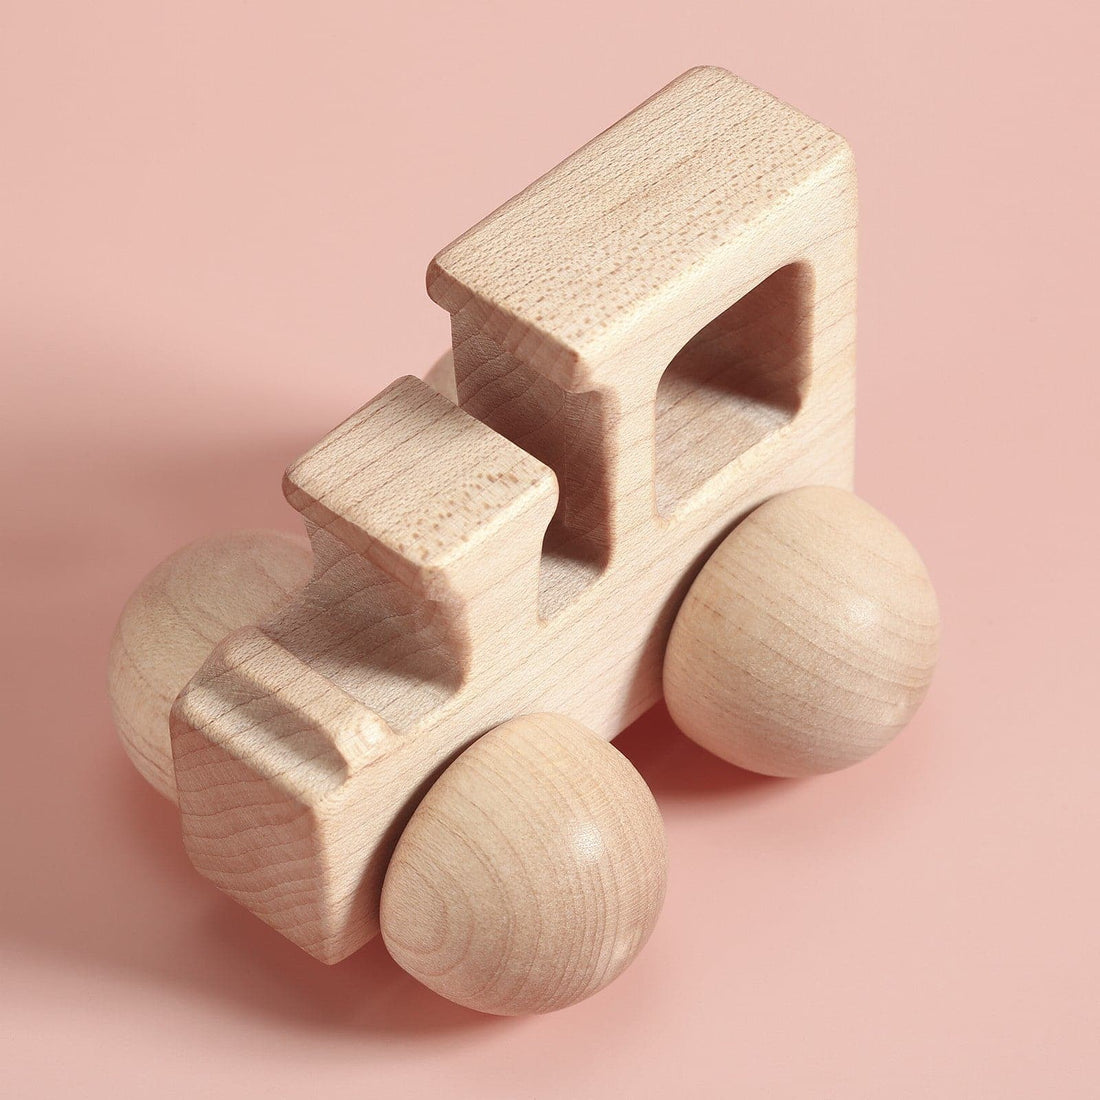 A Retro Train - Poco Wooden Toy - Pocotoys